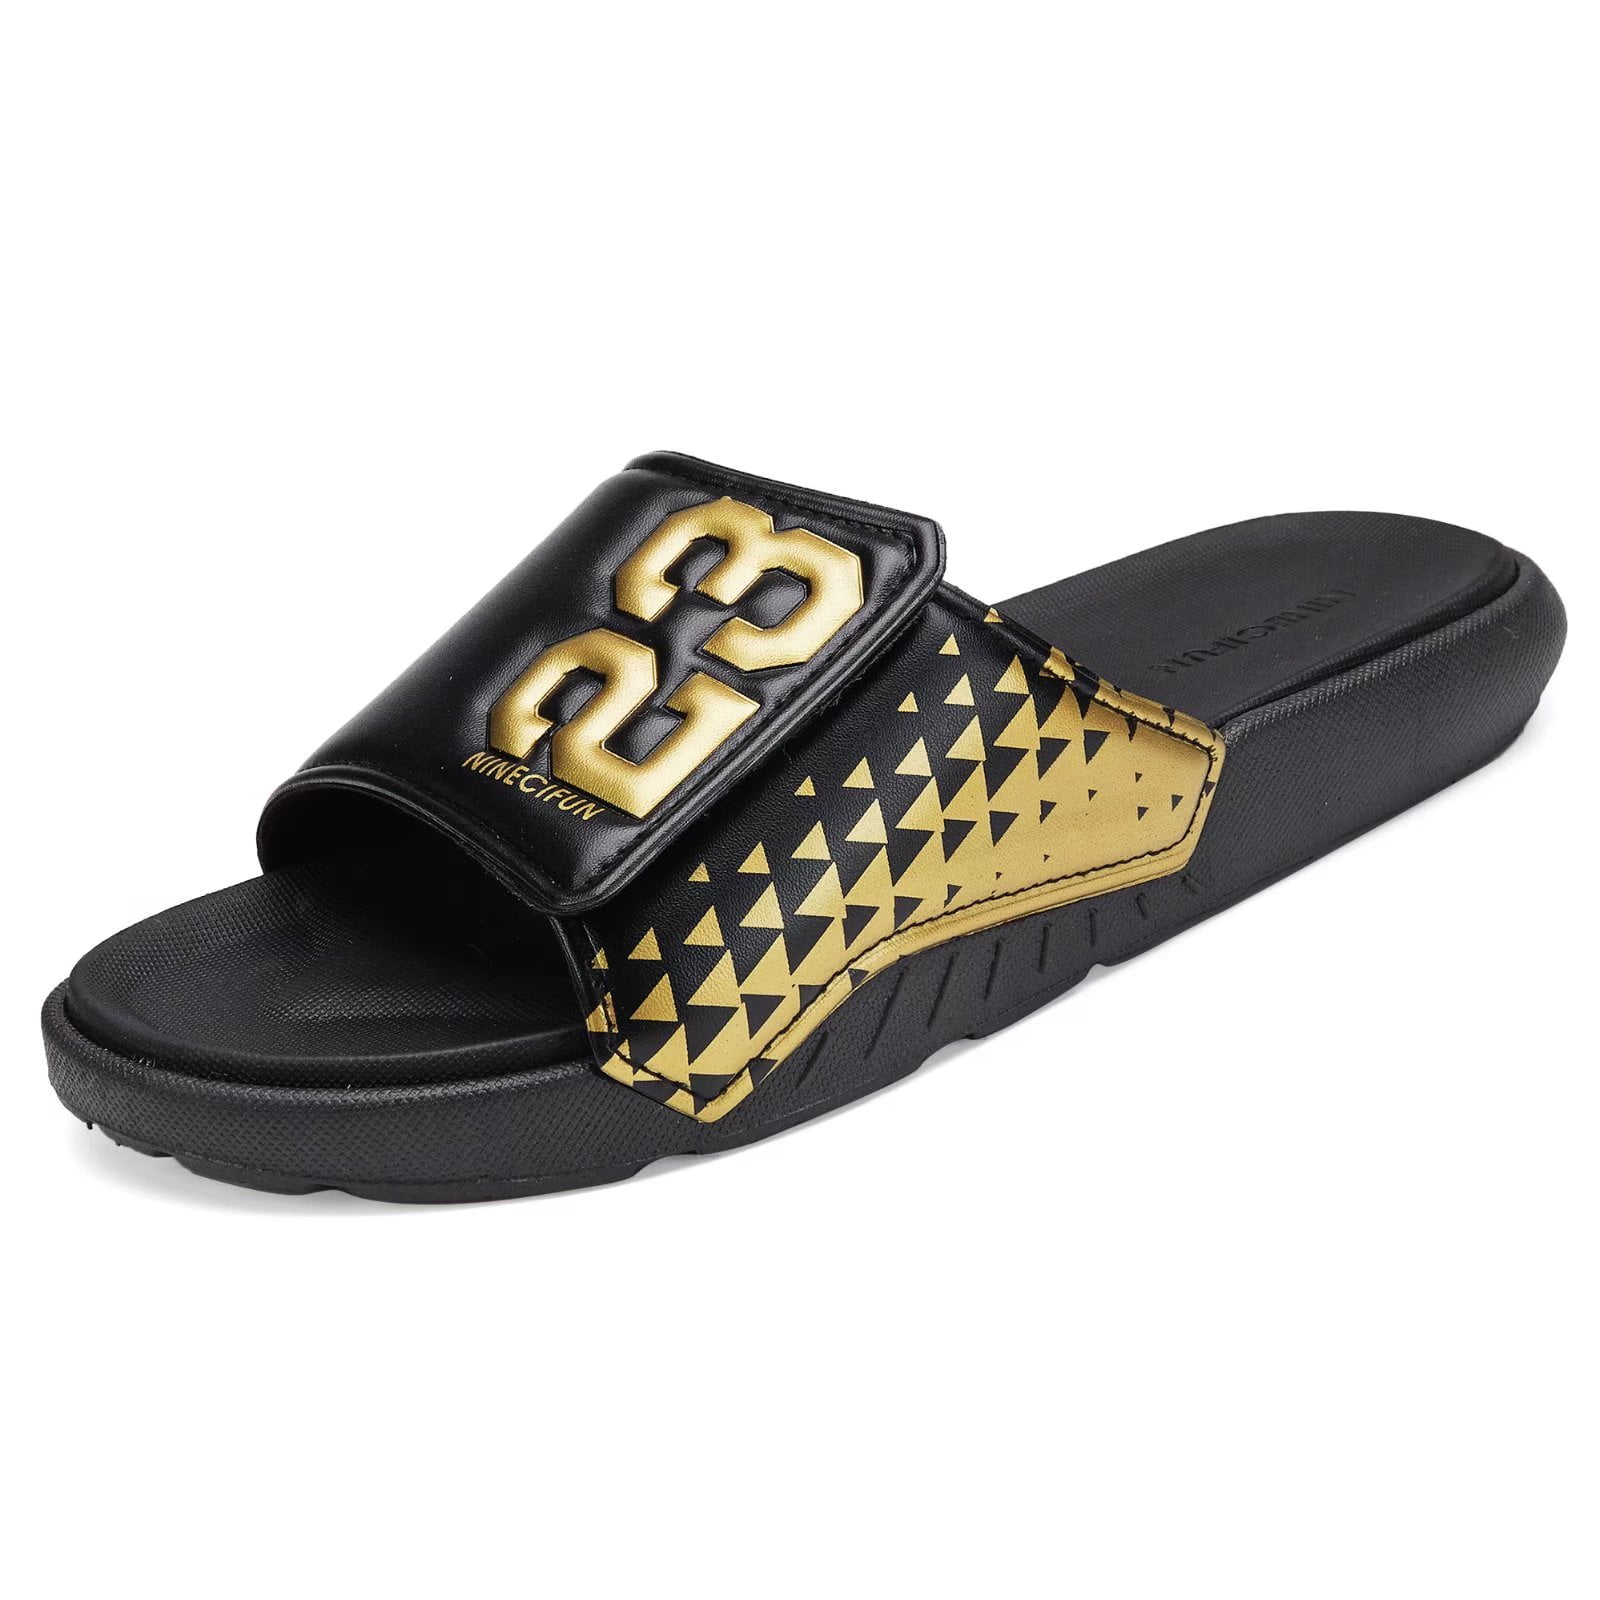 NineCiFun Men's Slides Sandals Shower Shoes Adjustable Black/Glod Size ...